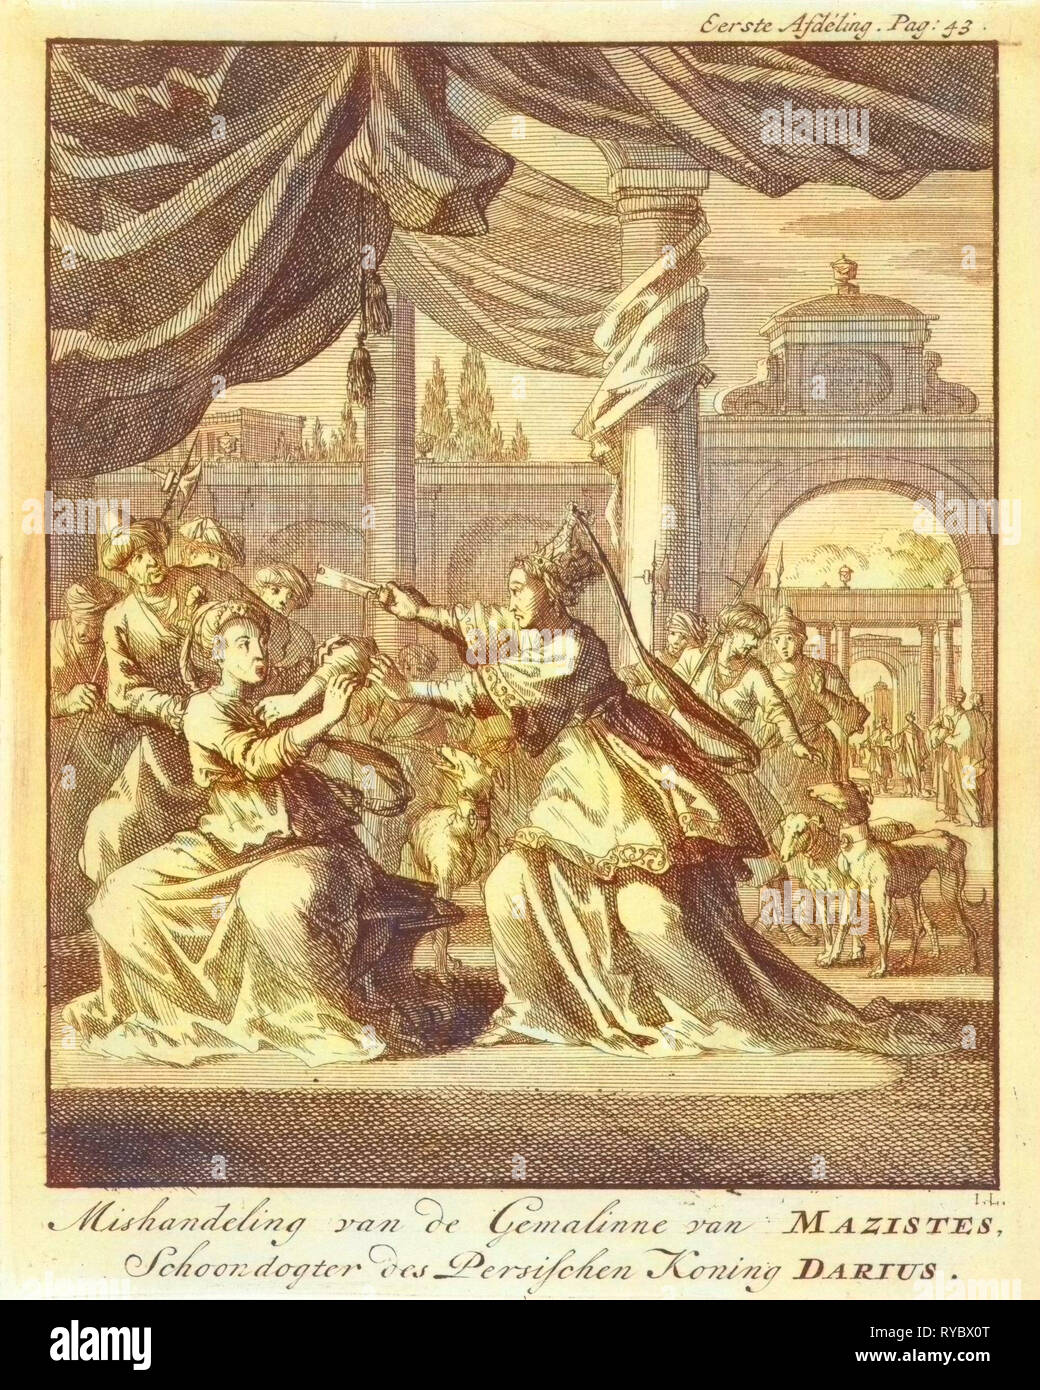 Mauvais traitements des femmes de Masistes, Jan Luyken, Jan Claesz dix Hoorn, 1699 Banque D'Images